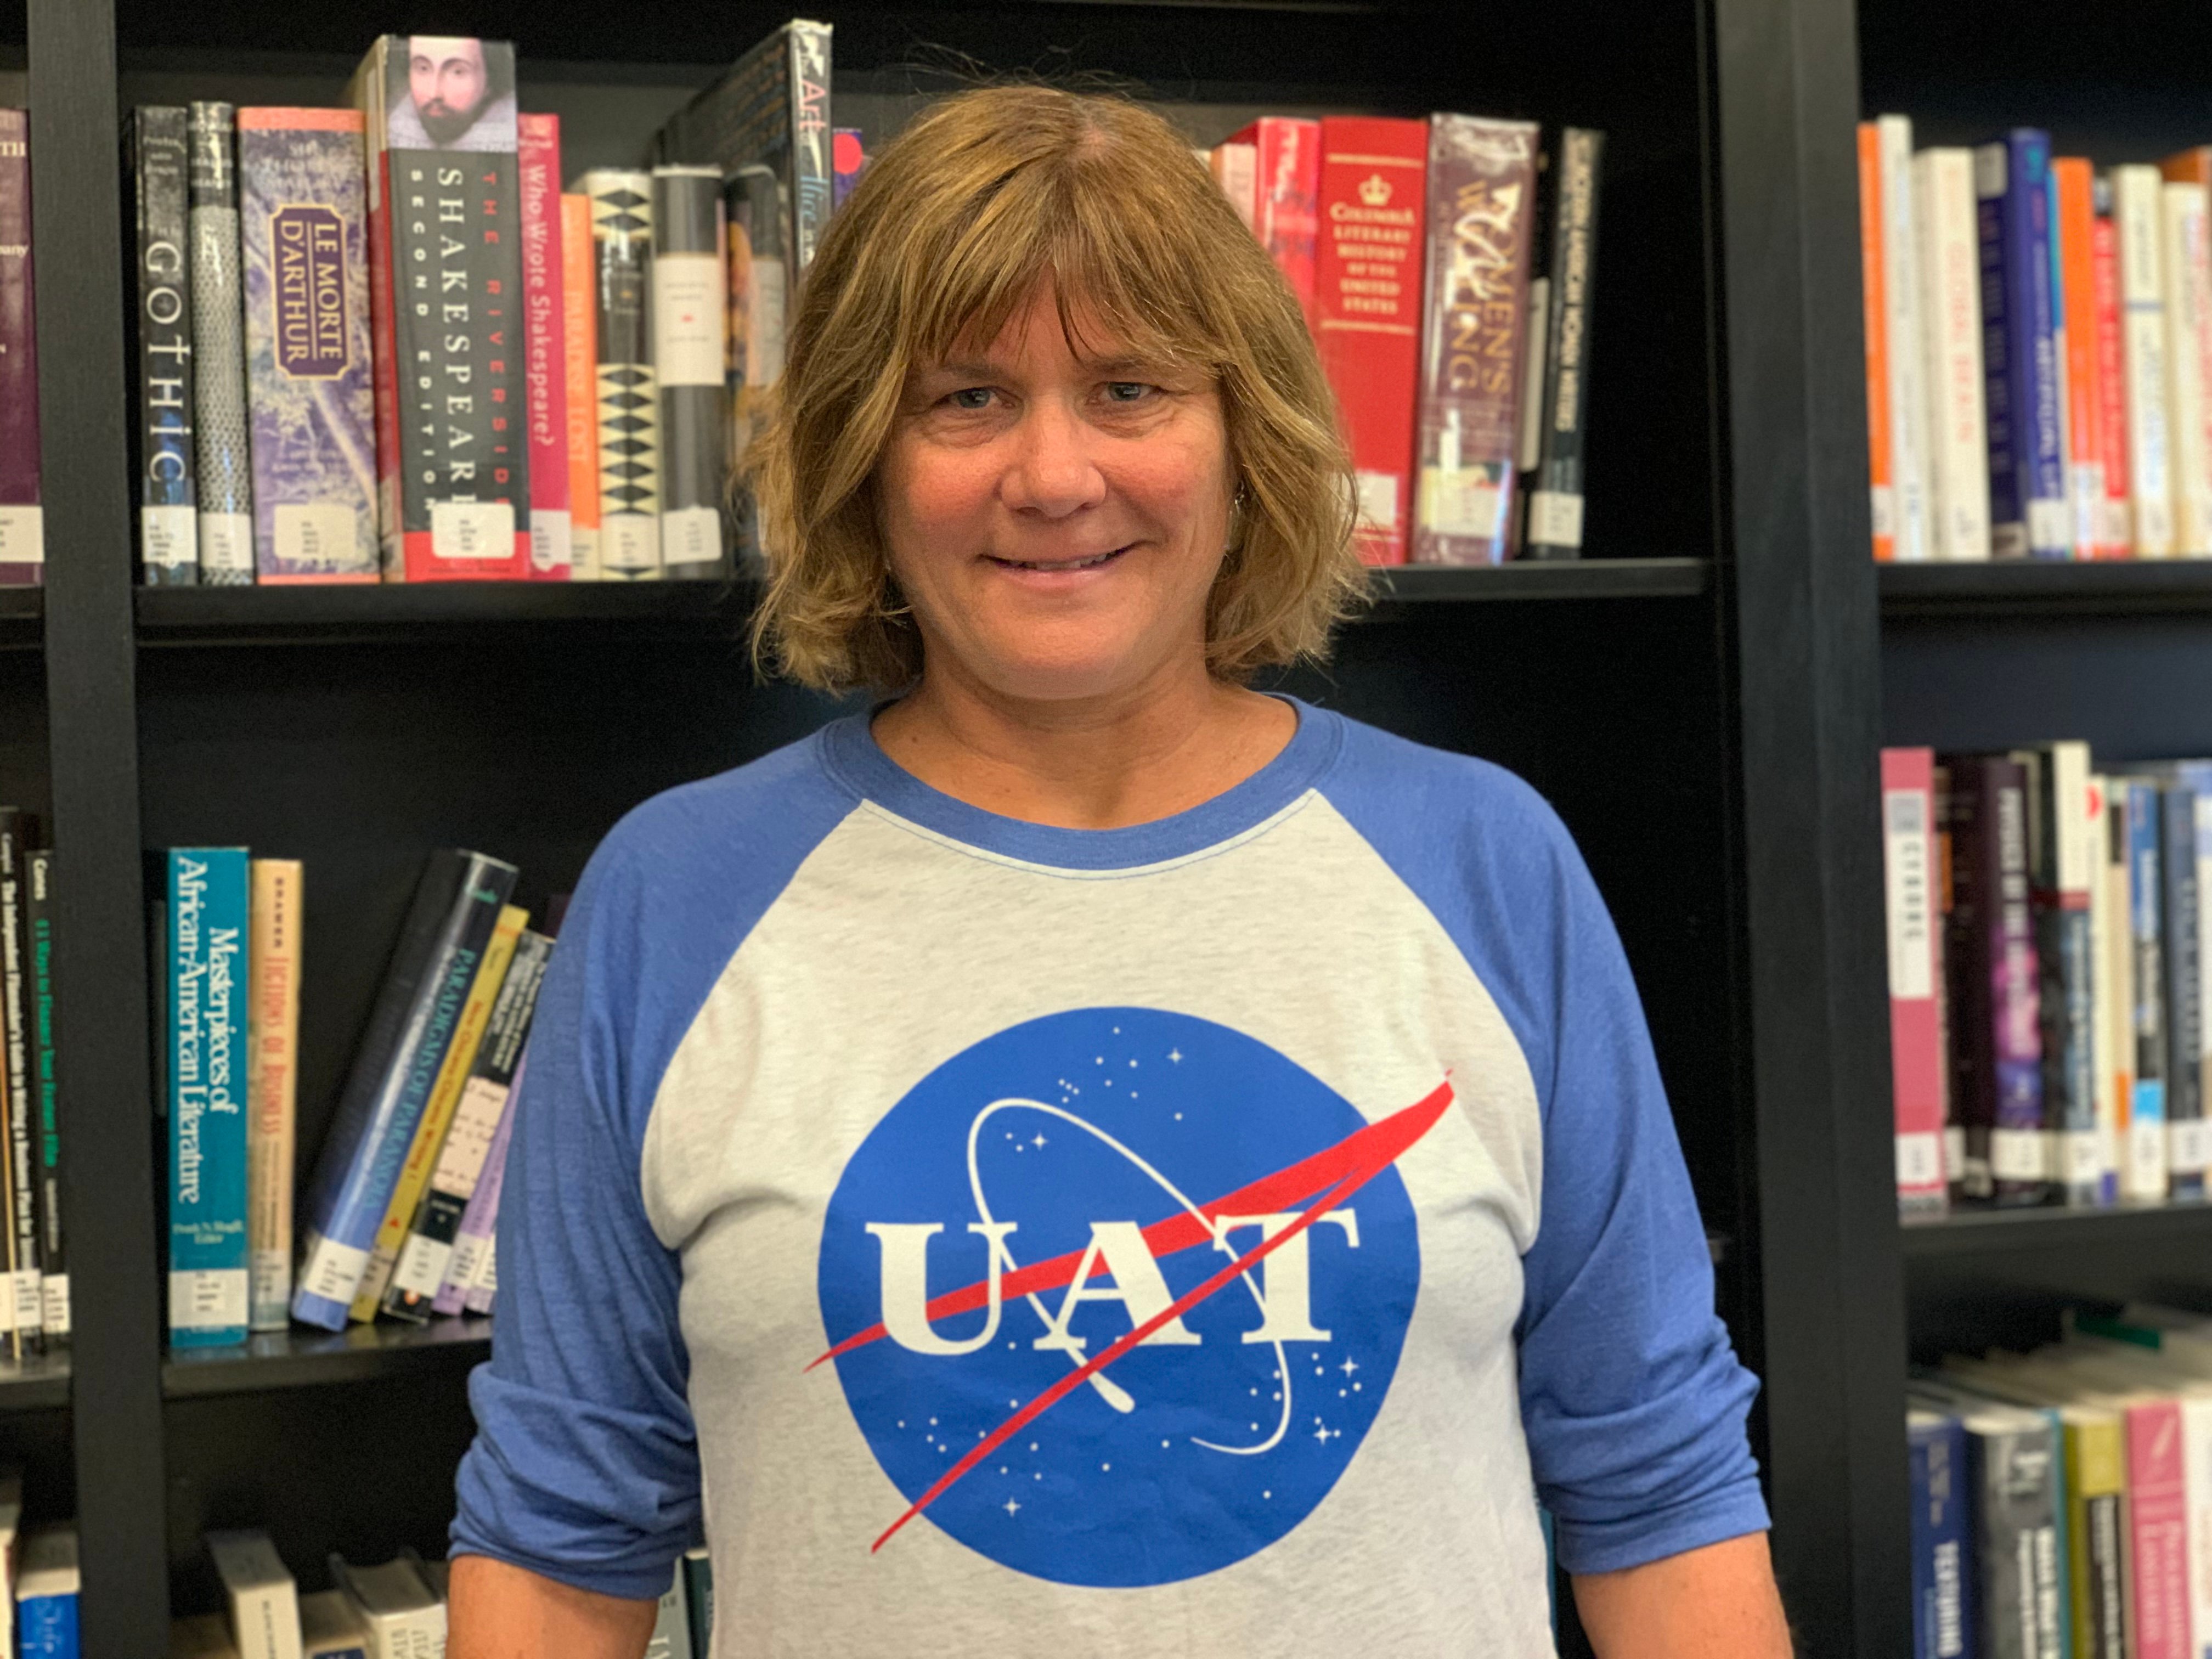 Dr. Jill Coddington, ACS Professor at UAT